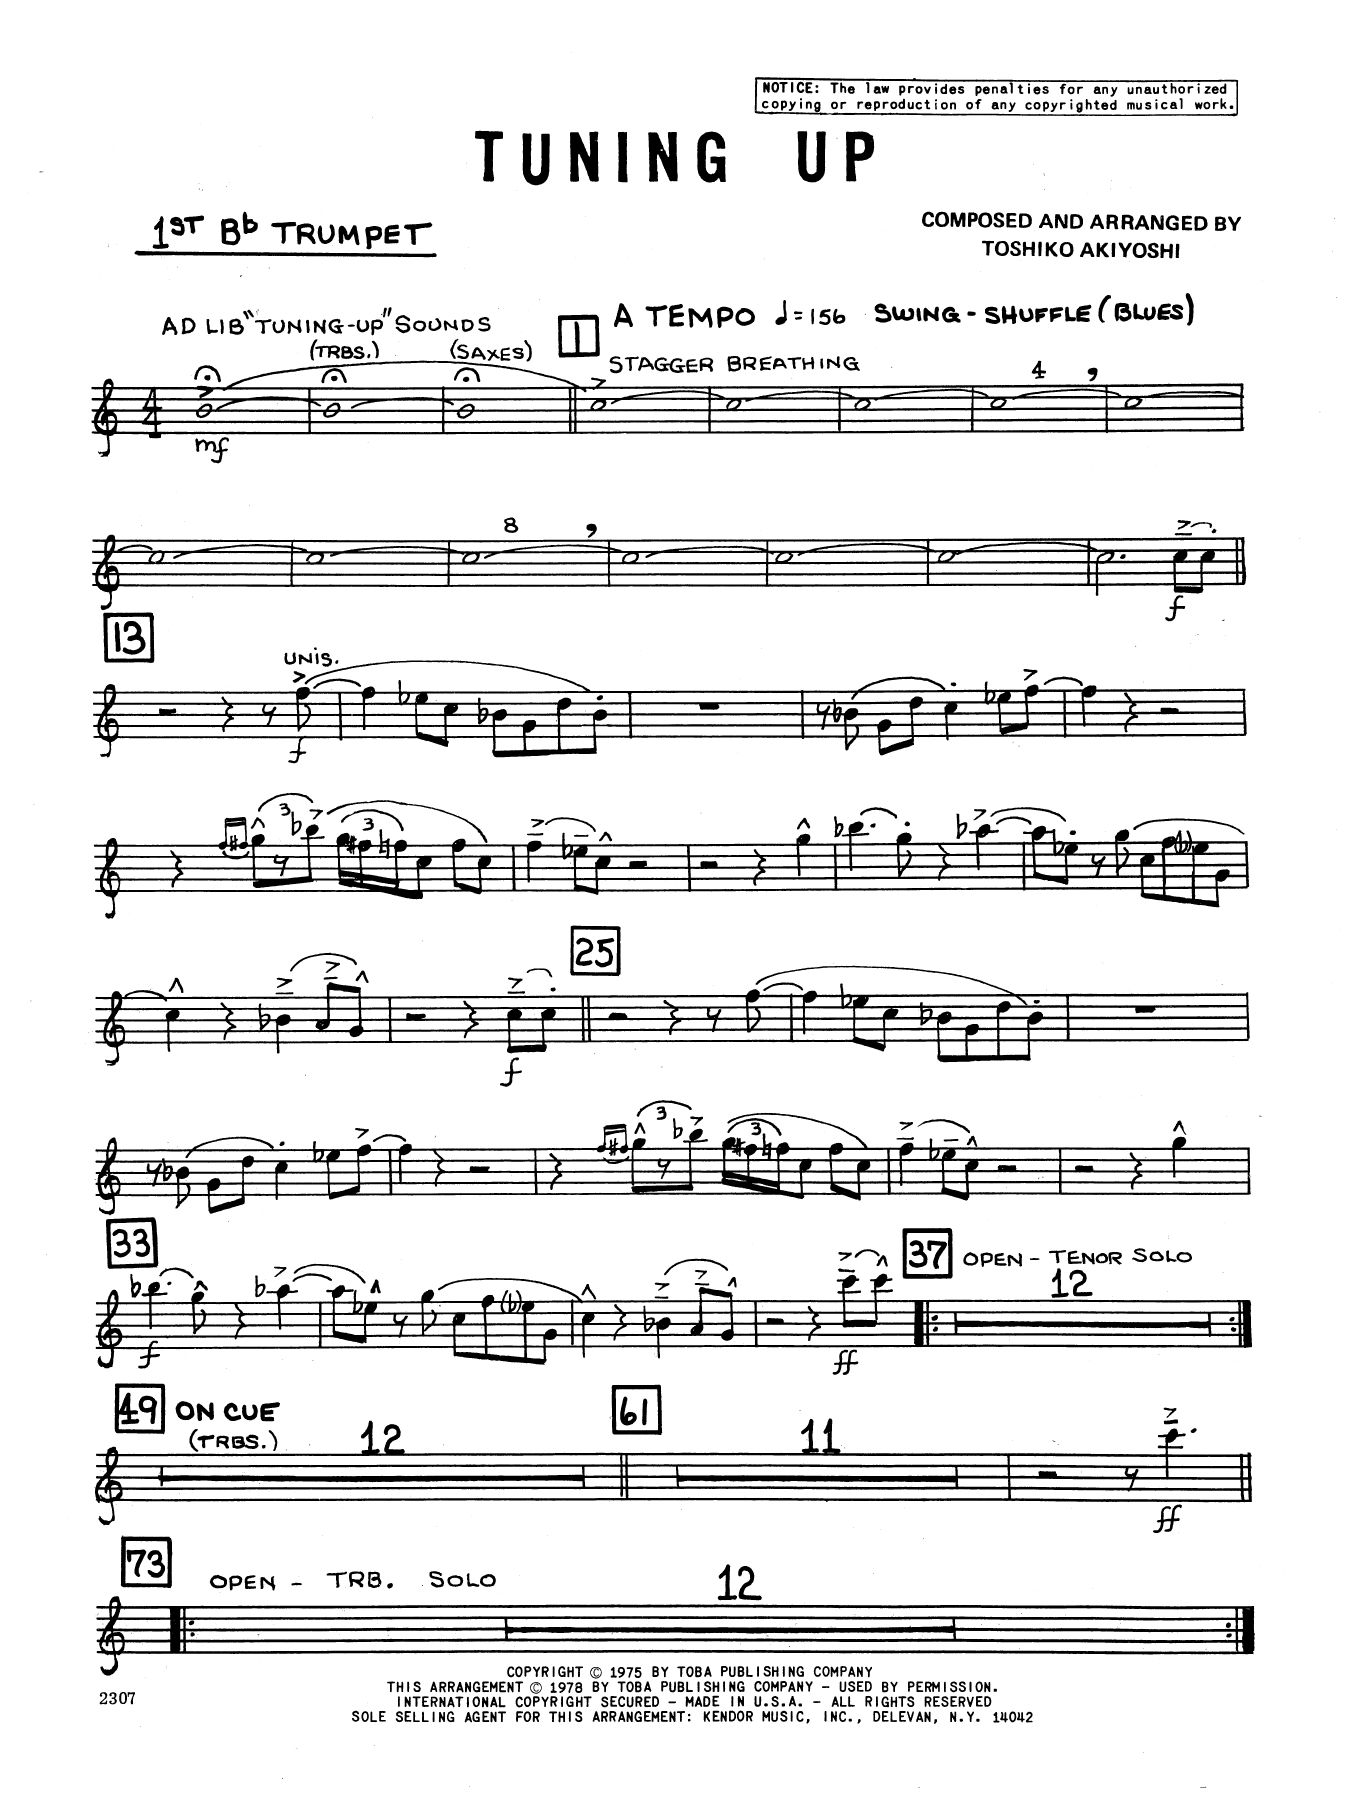 Download Toshiko Akiyoshi Tuning Up - 1st Bb Trumpet Sheet Music